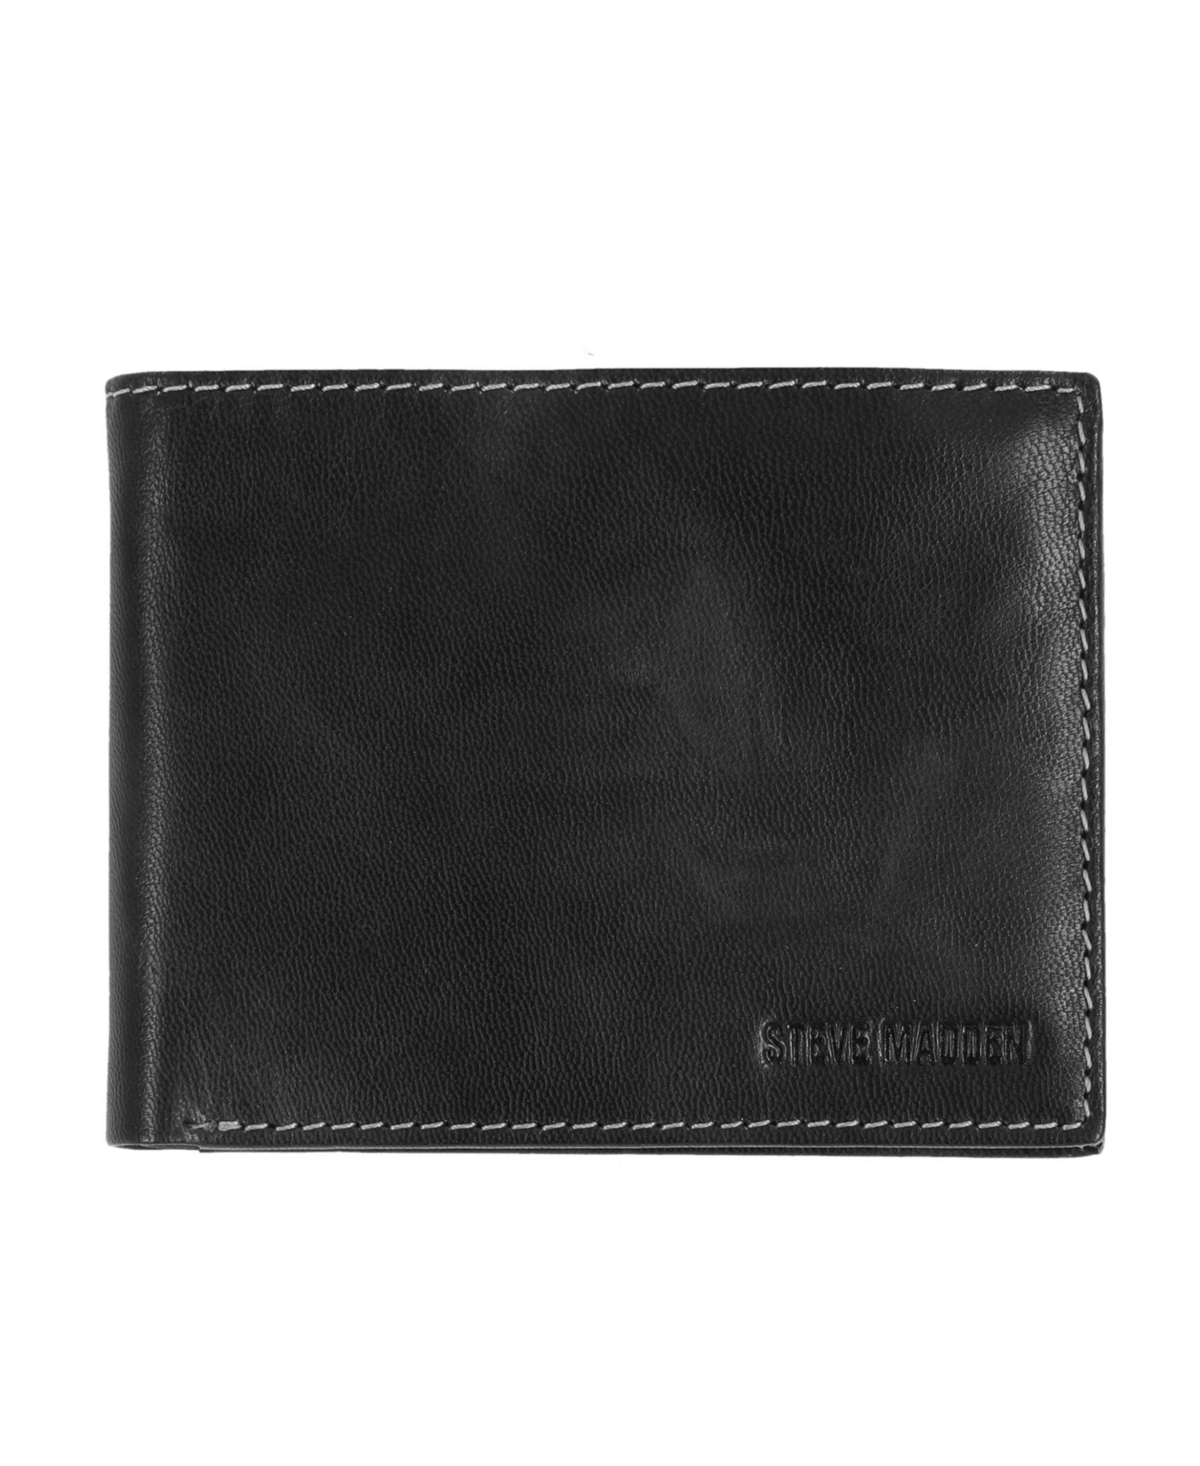 Steve Madden Men's Antique-like Rfid Passport Case In Black